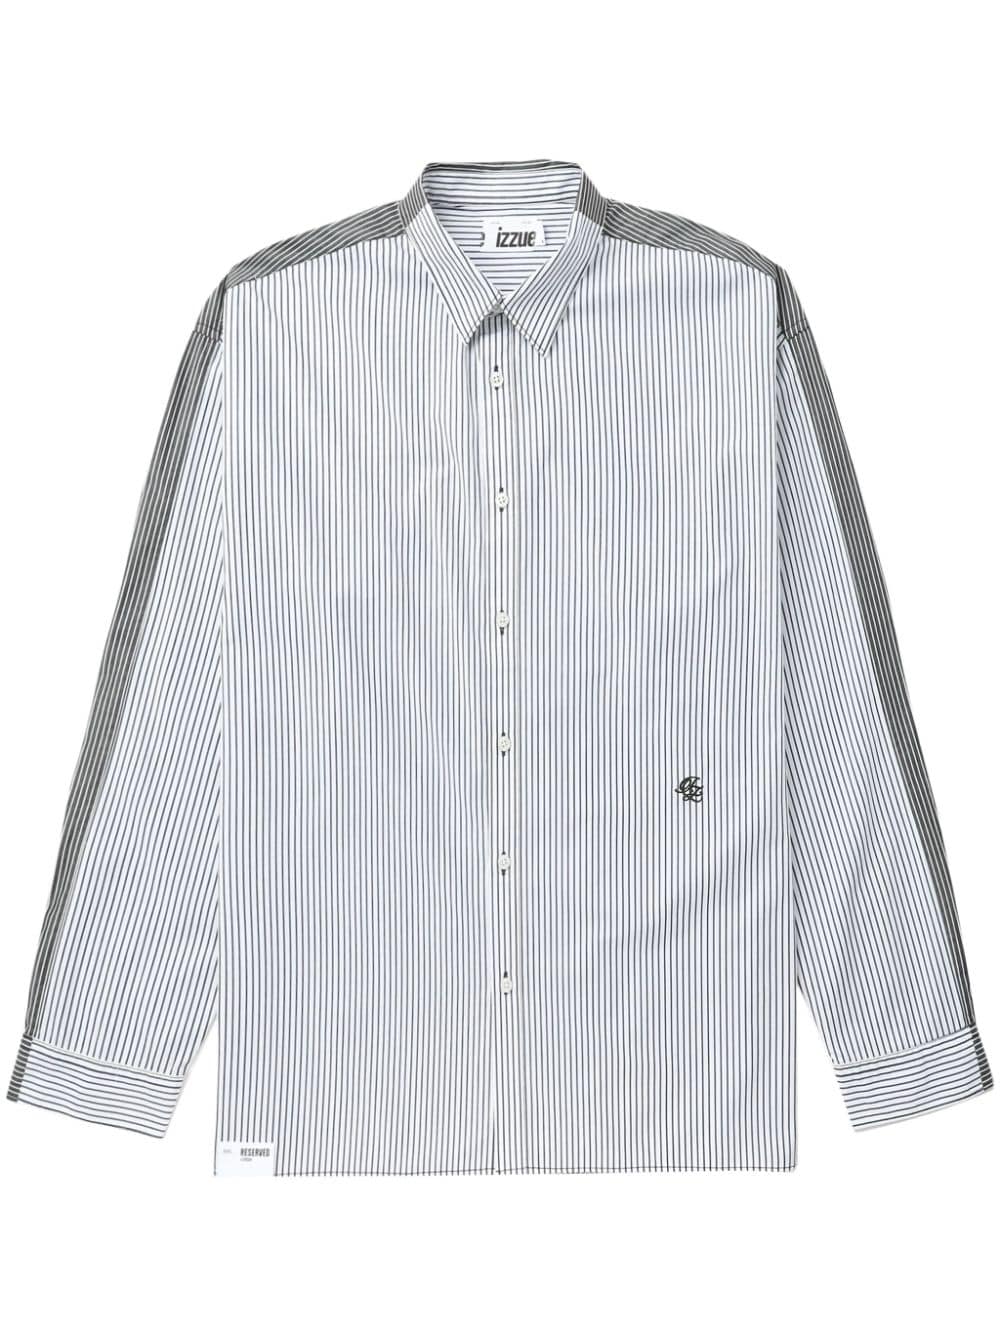 izzue striped cotton shirt - Grey von izzue